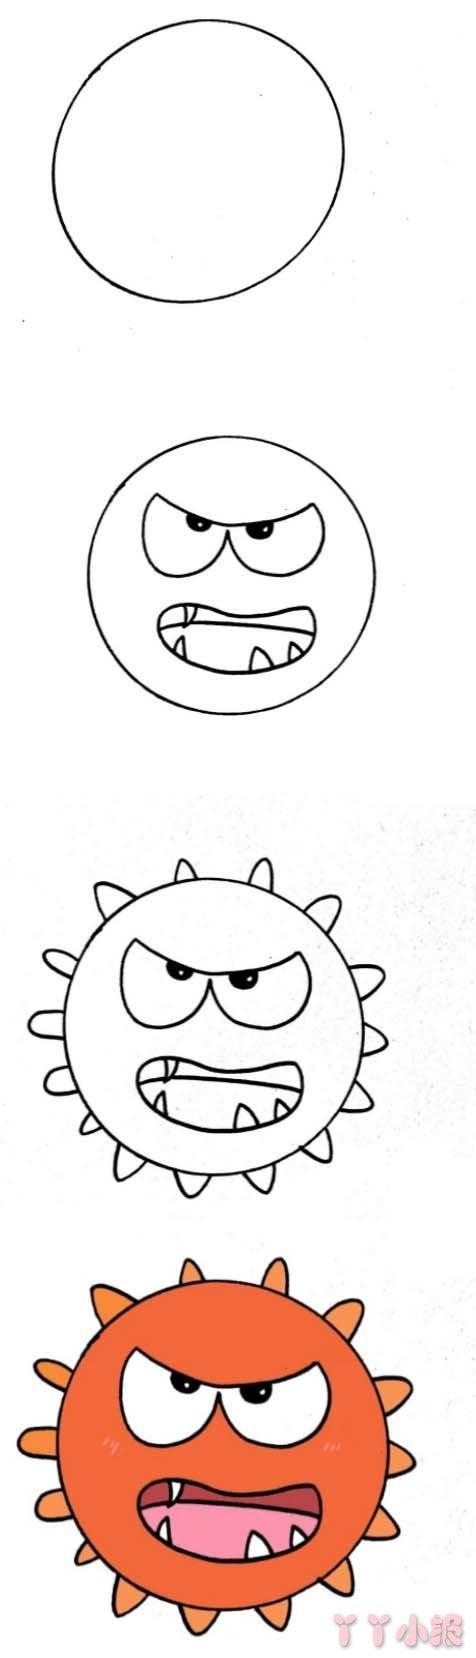 病毒的简笔画卡通 病毒的简笔画卡通怎么画新型冠状病毒简笔画怎么画